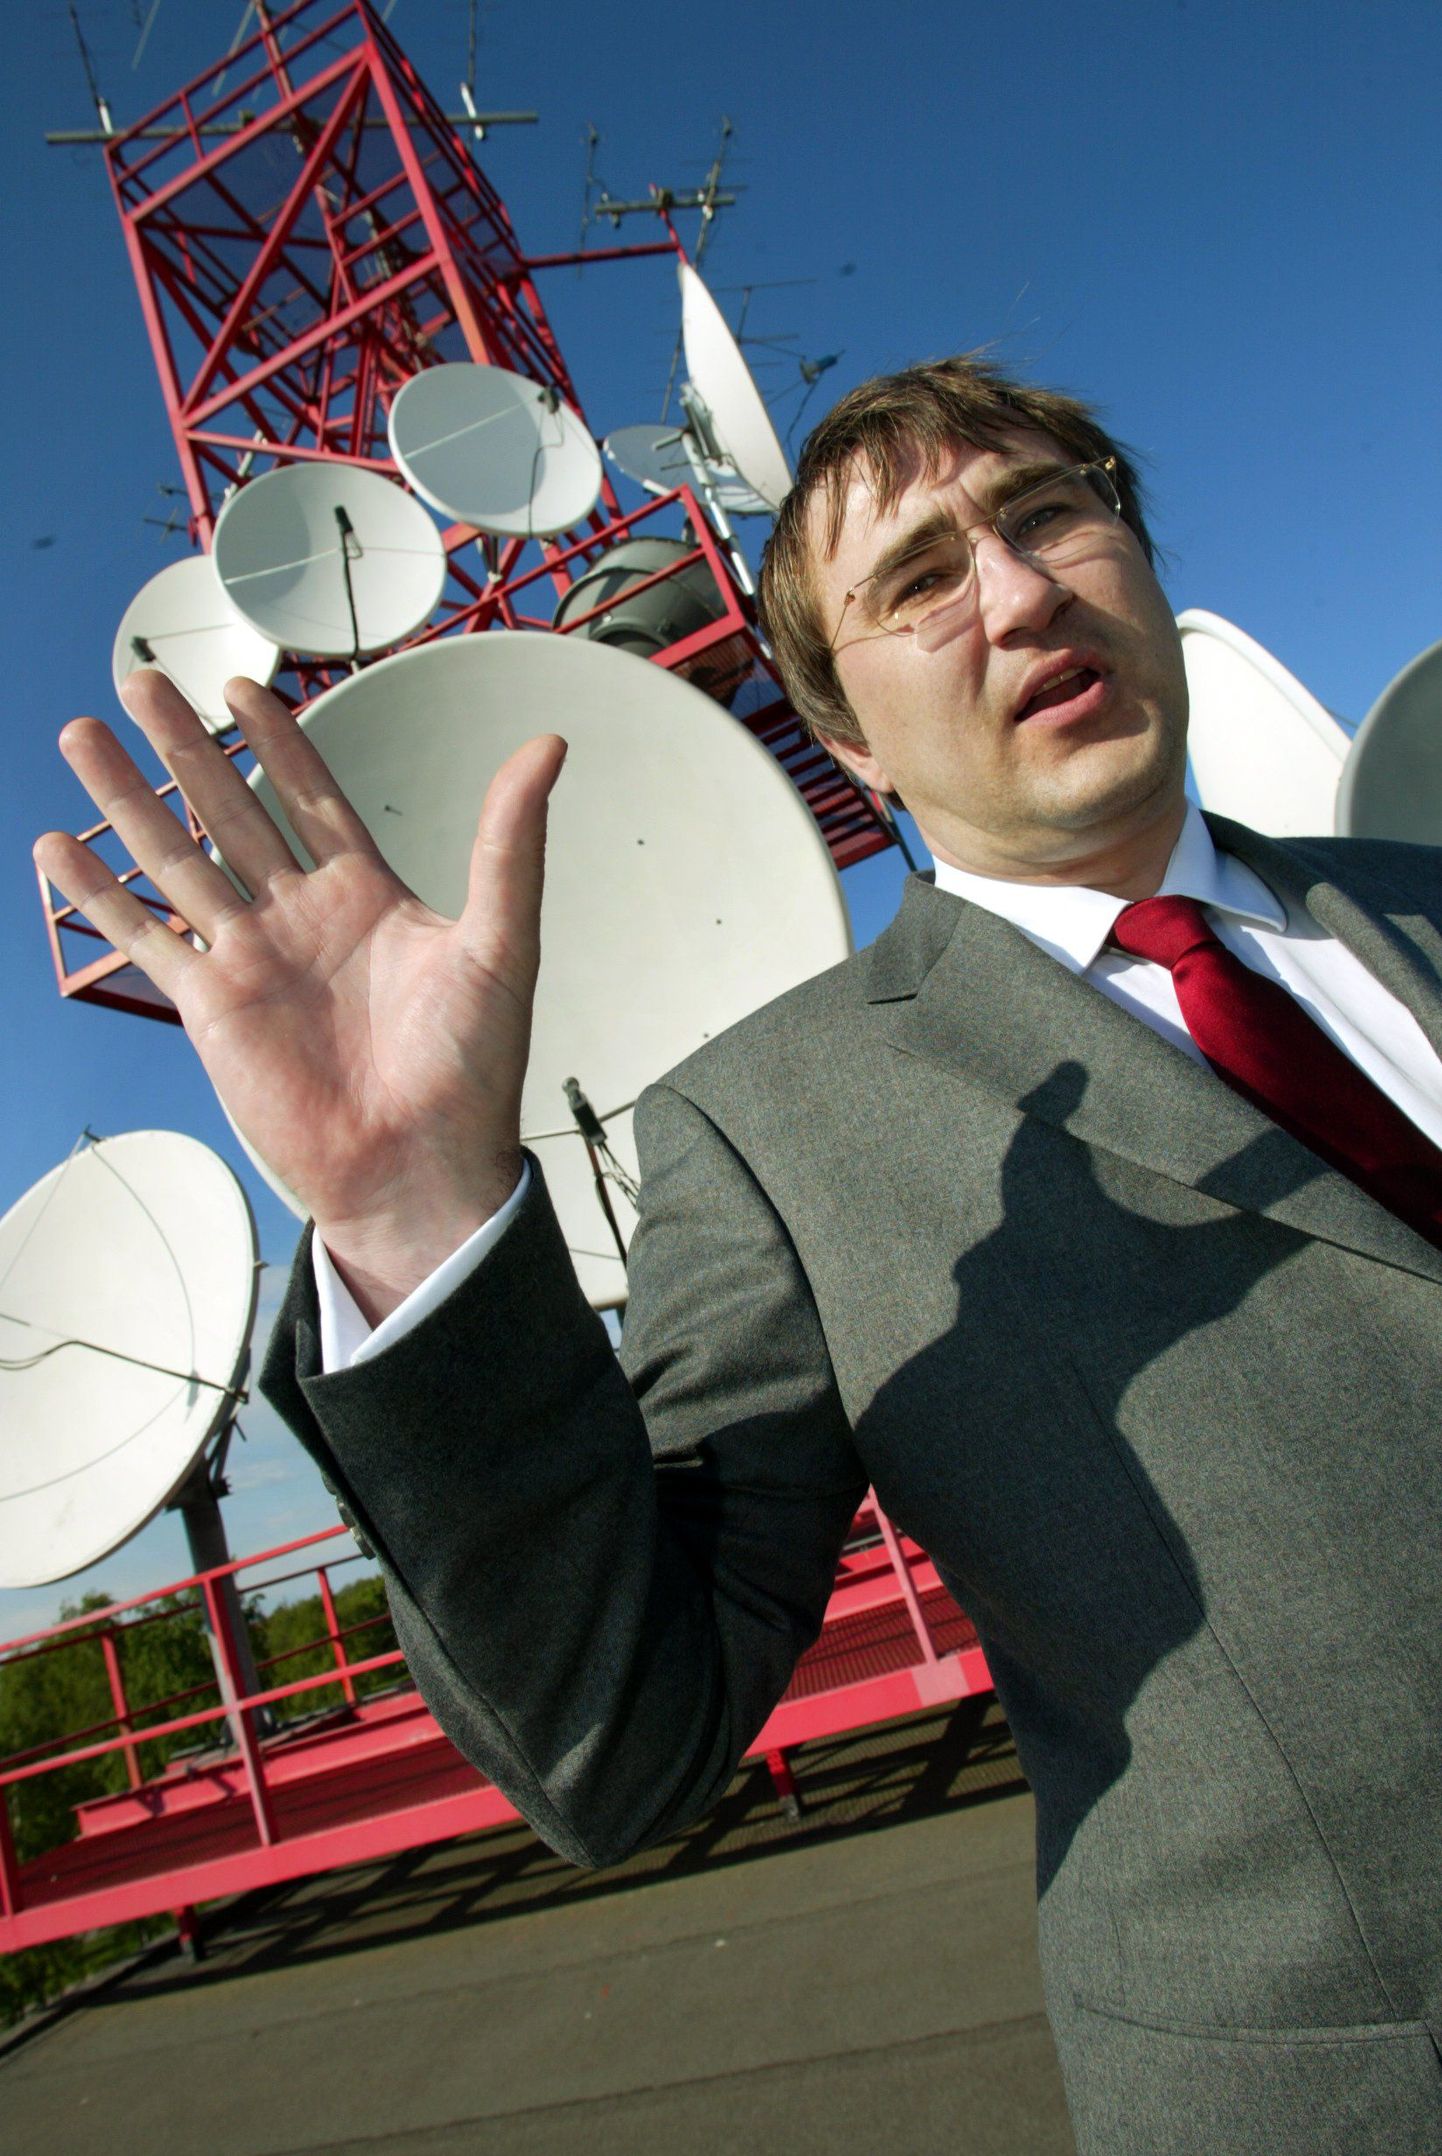 Starman lubas eile tõsta kodukasutajate internetikiiruse 100 megabitini sekundis. Pildil ettevõtte juht Peeter Kern.